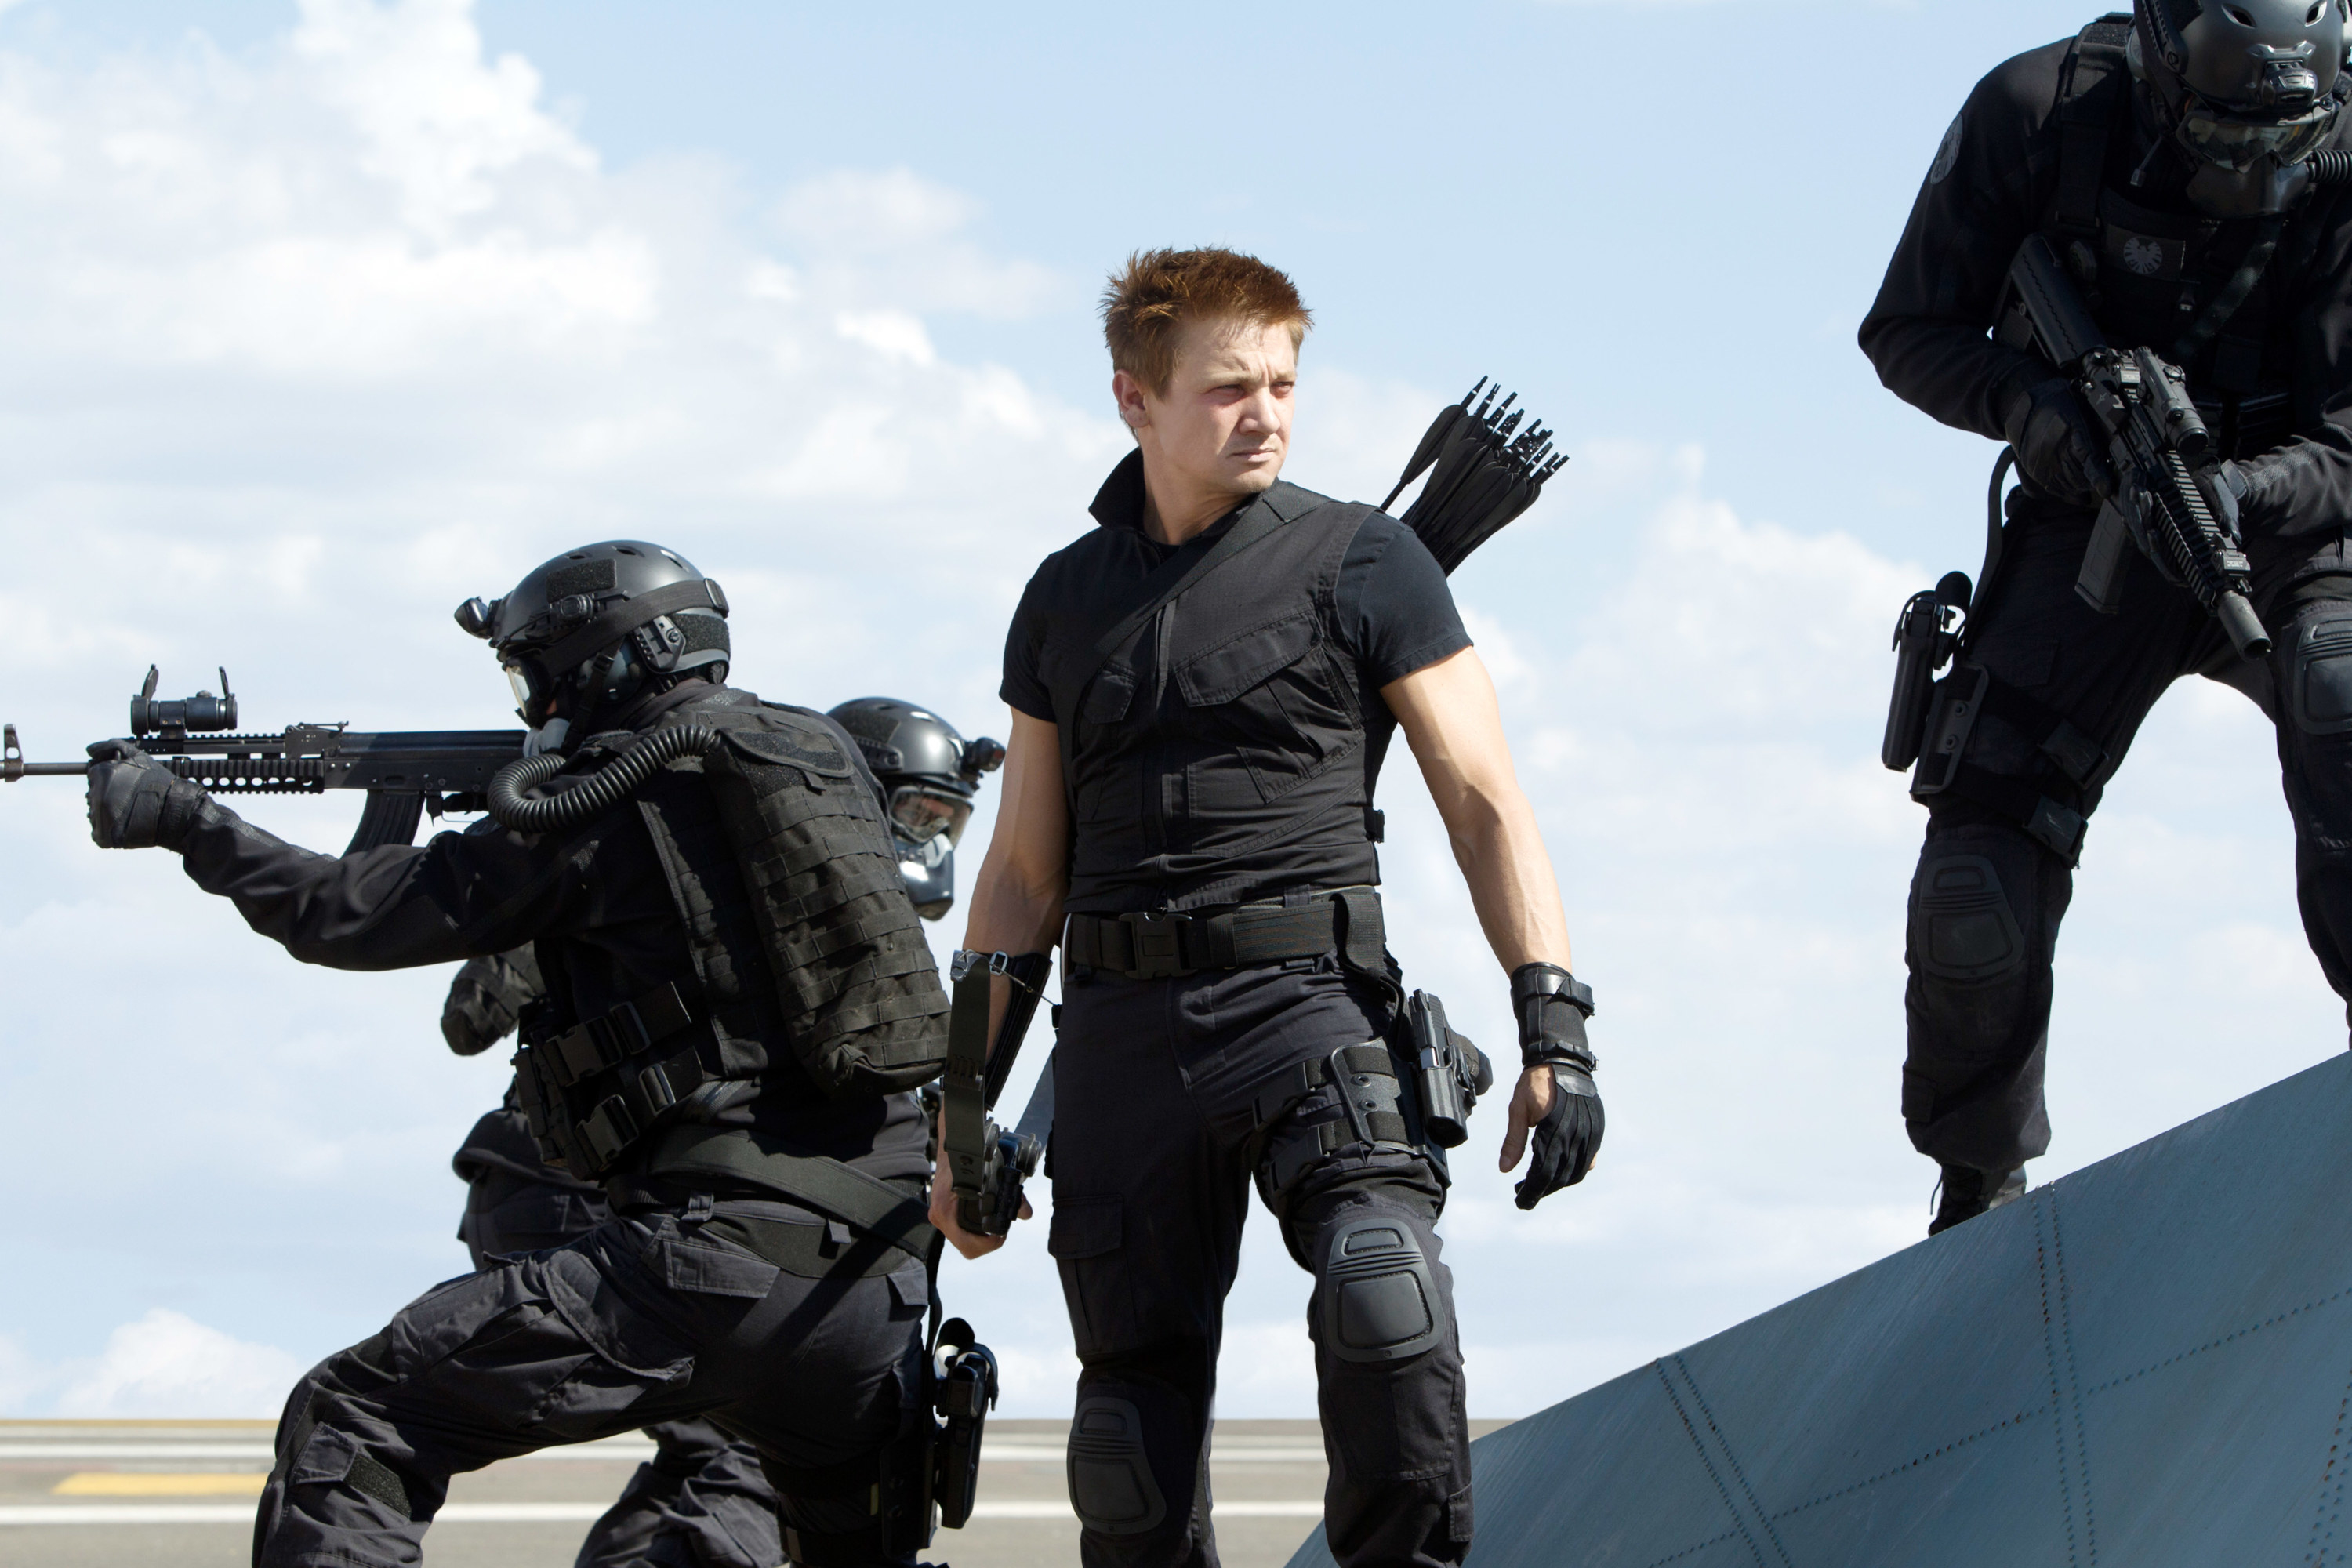 Hawkeye in between to soldiers wielding machine guns